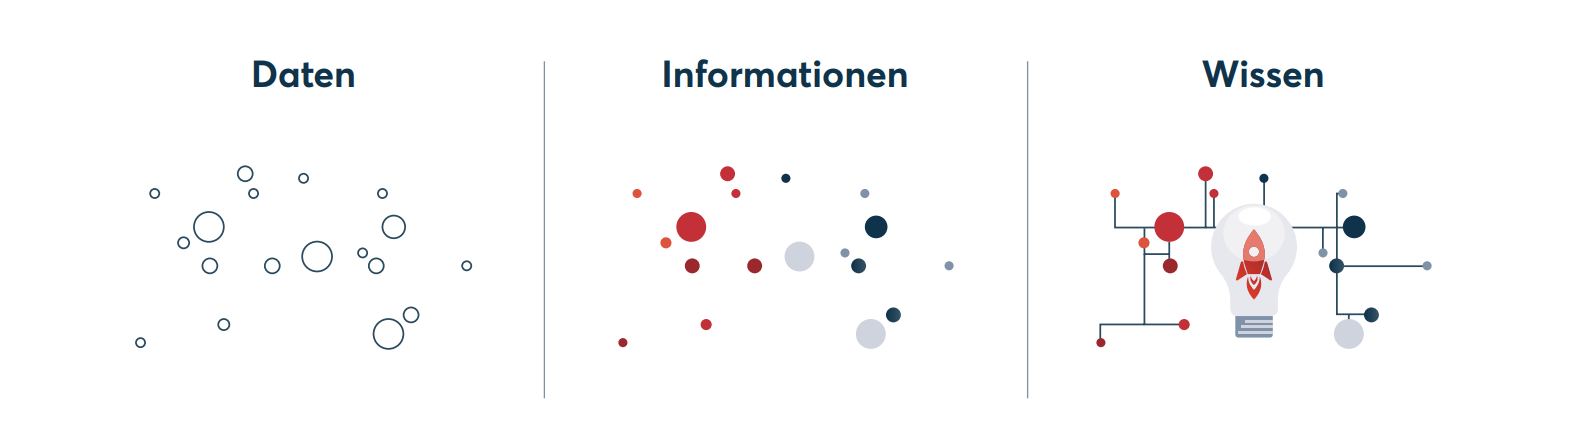 Definition_der_Begriffe_Daten_Informationen_Wissen